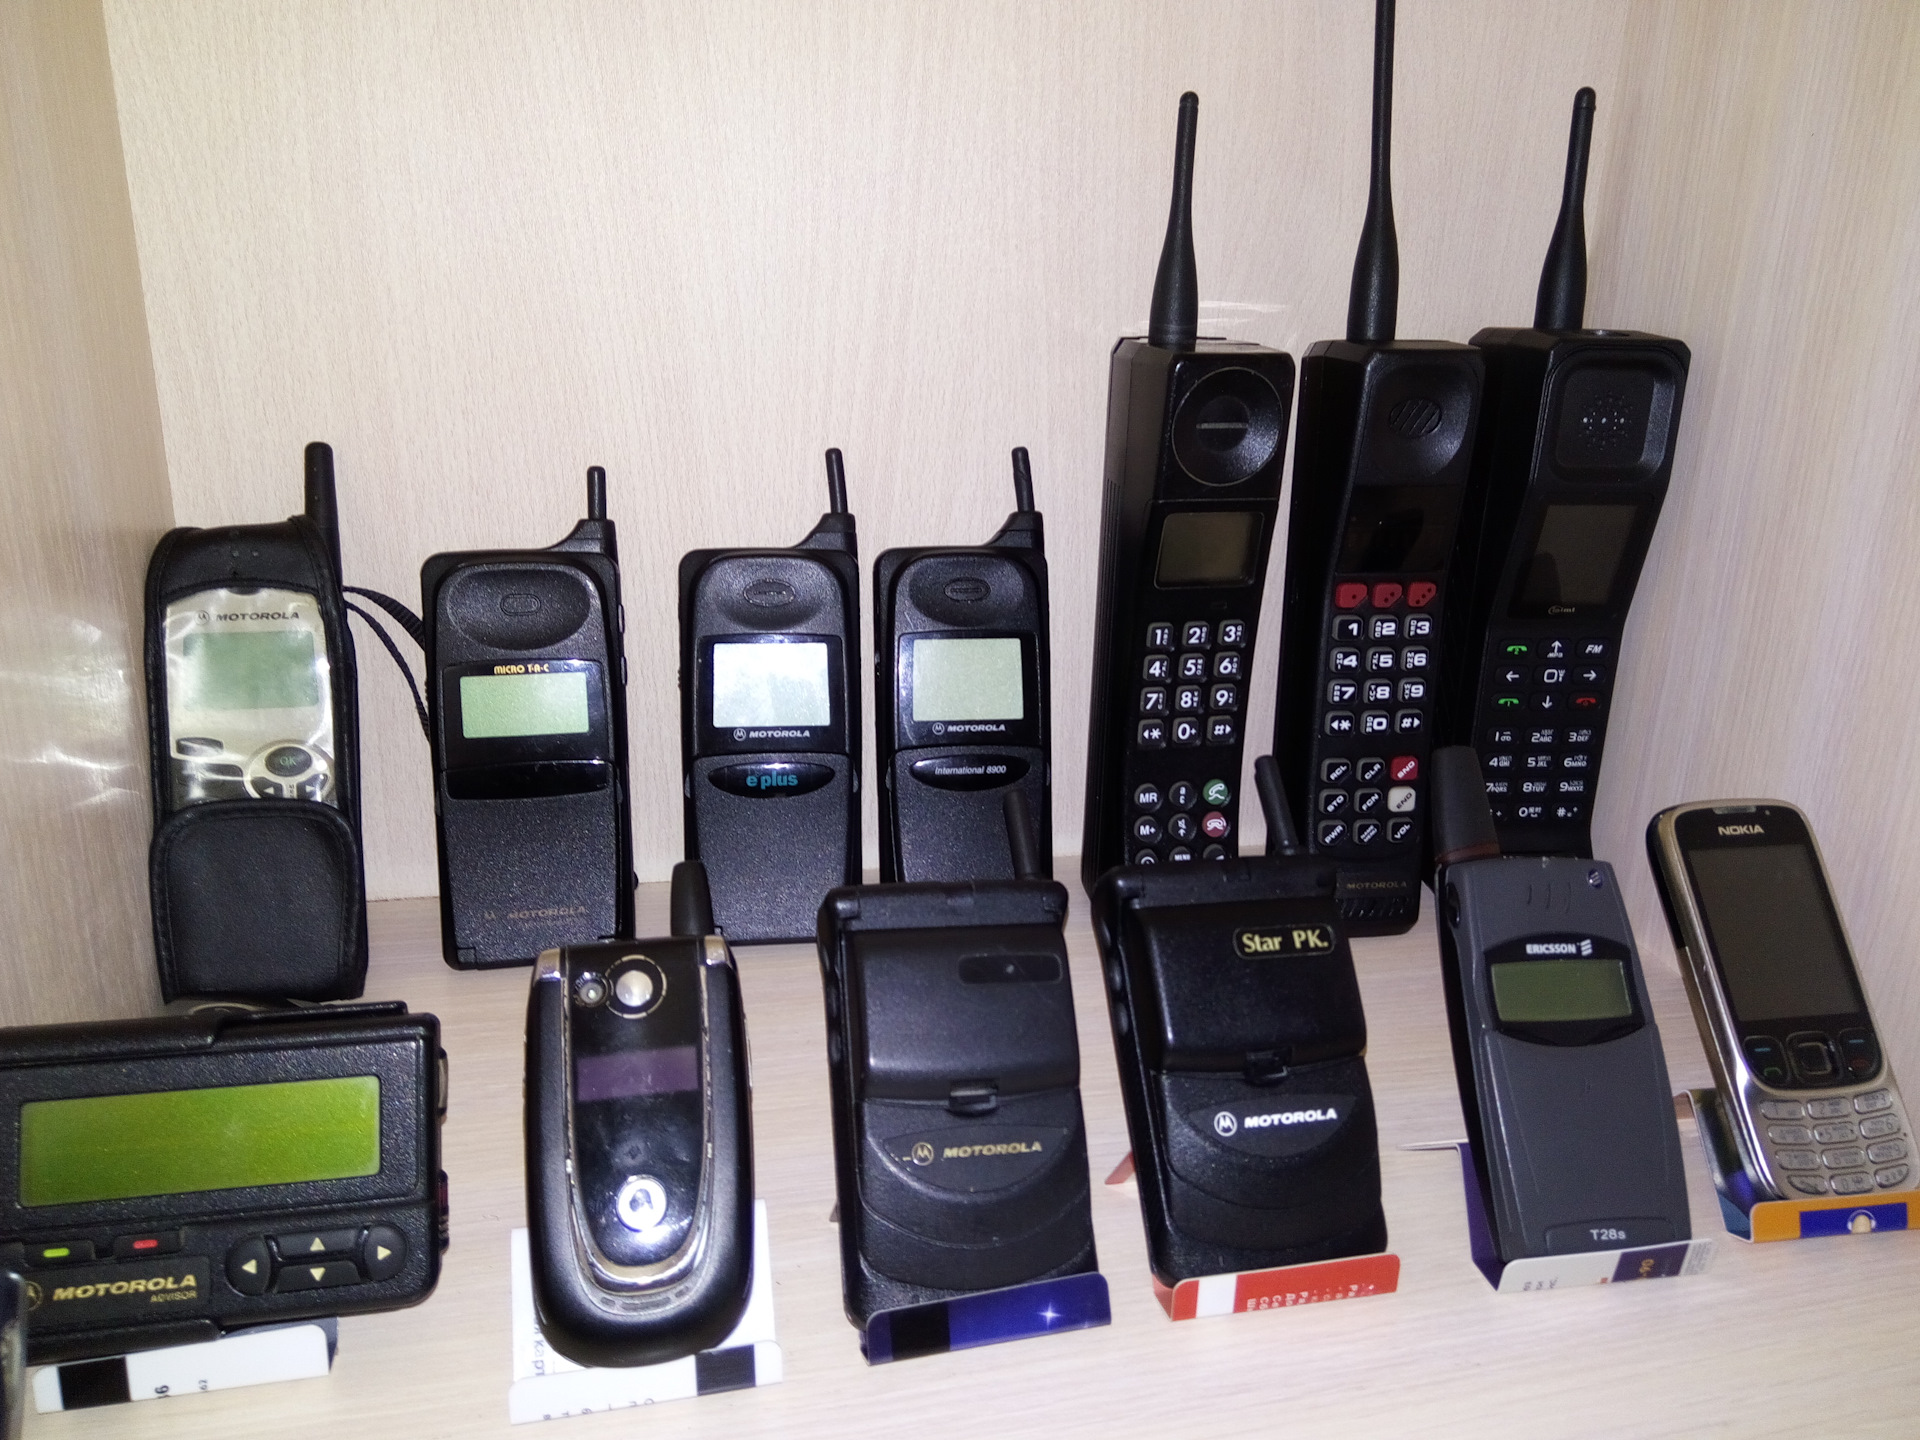 Мобильные телефоны 90. Motorola сотовый 90. Моторола сотовый в 90. Motorola сотовый 2000. Моторола в 80.